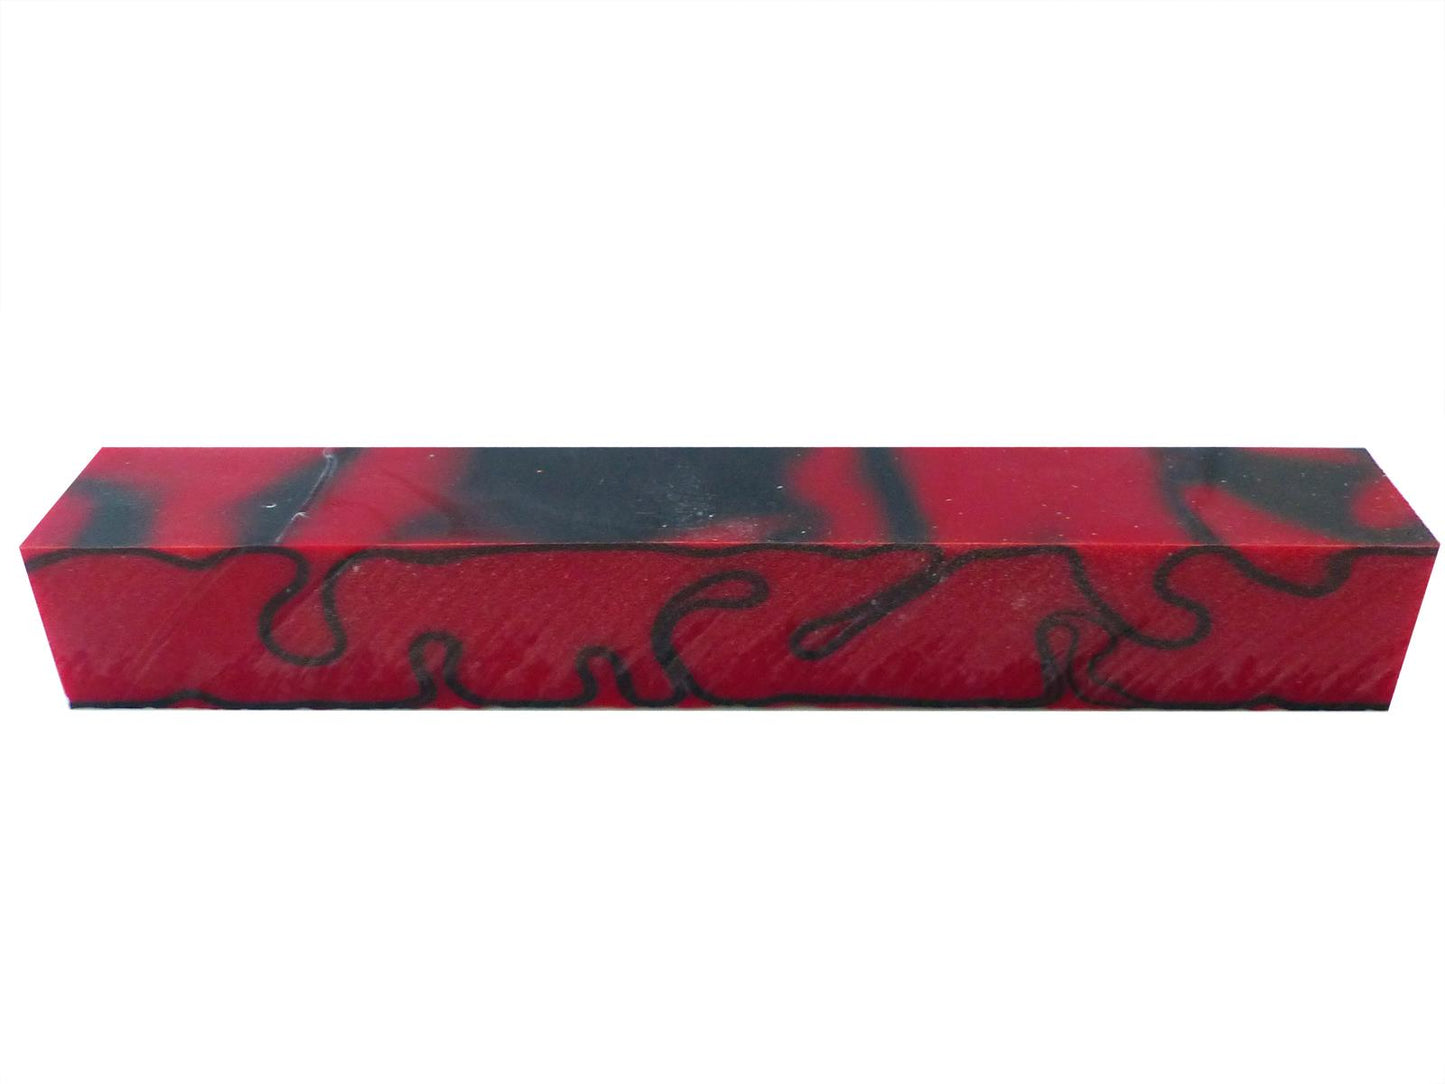 Turners' Mill Kirinite Red Devil Abstract Kirinite Acrylic Pen Blank - 150x20x20mm (5.9x0.79x0.79"), 6x3/4x3/4"